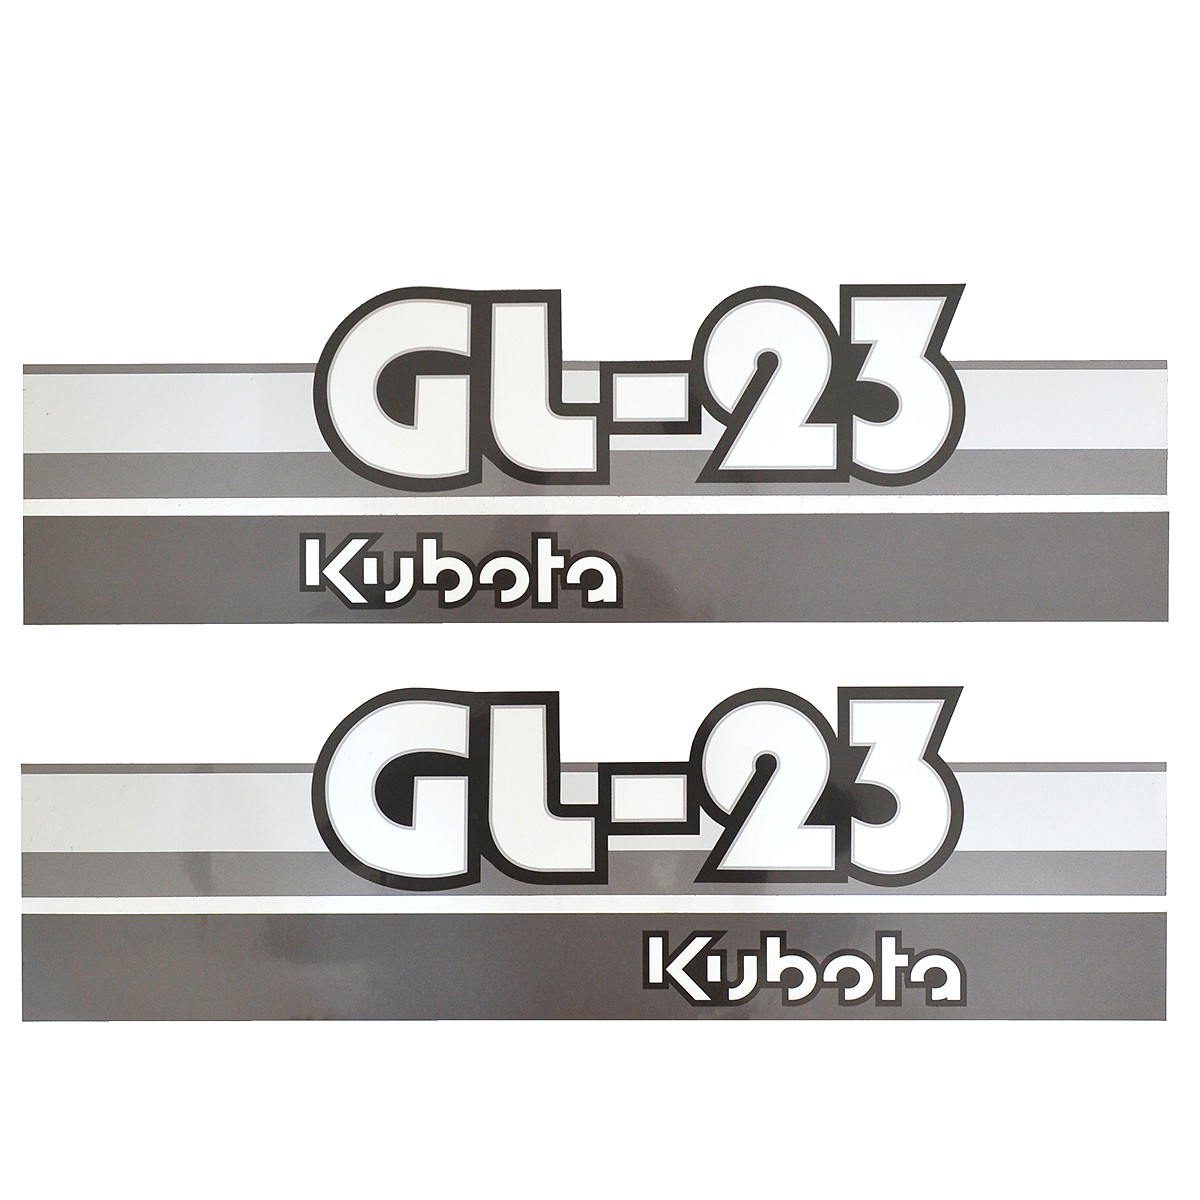 Nálepky Kubota GL23